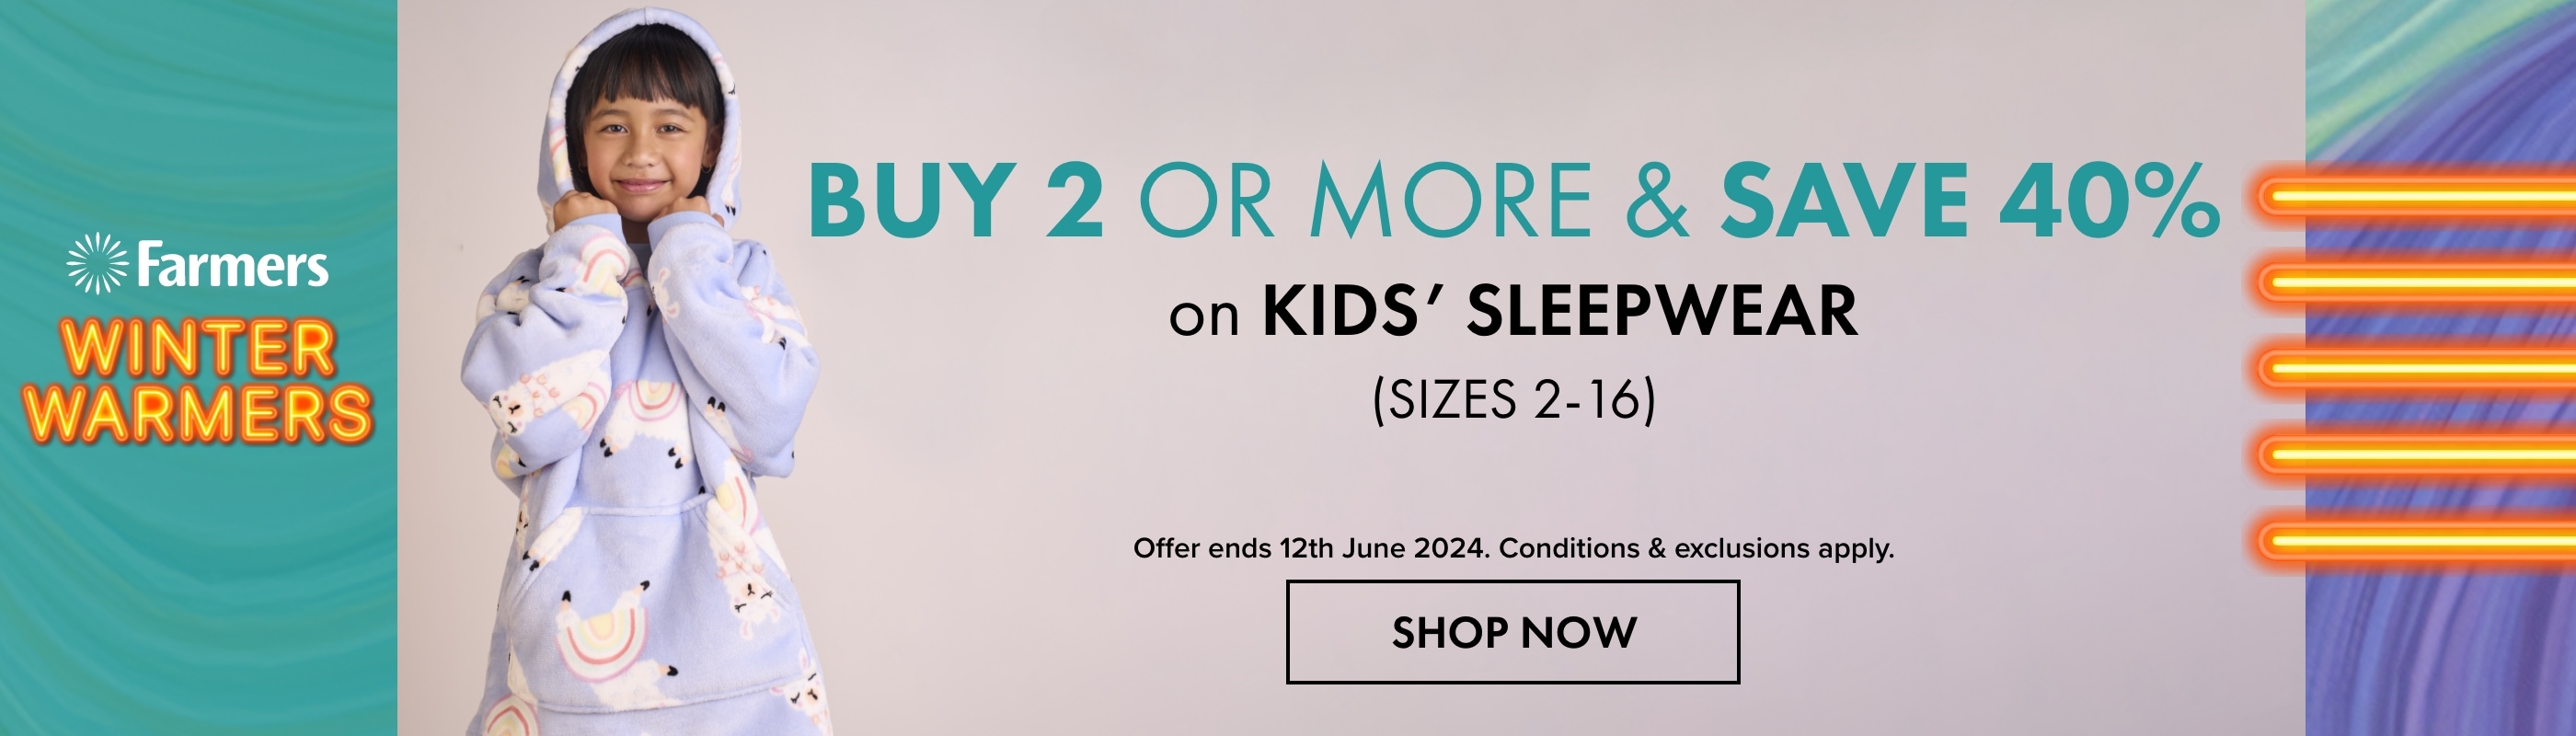 Buy 2 or more & Save 40% on Kids' Sleepwear 2-16